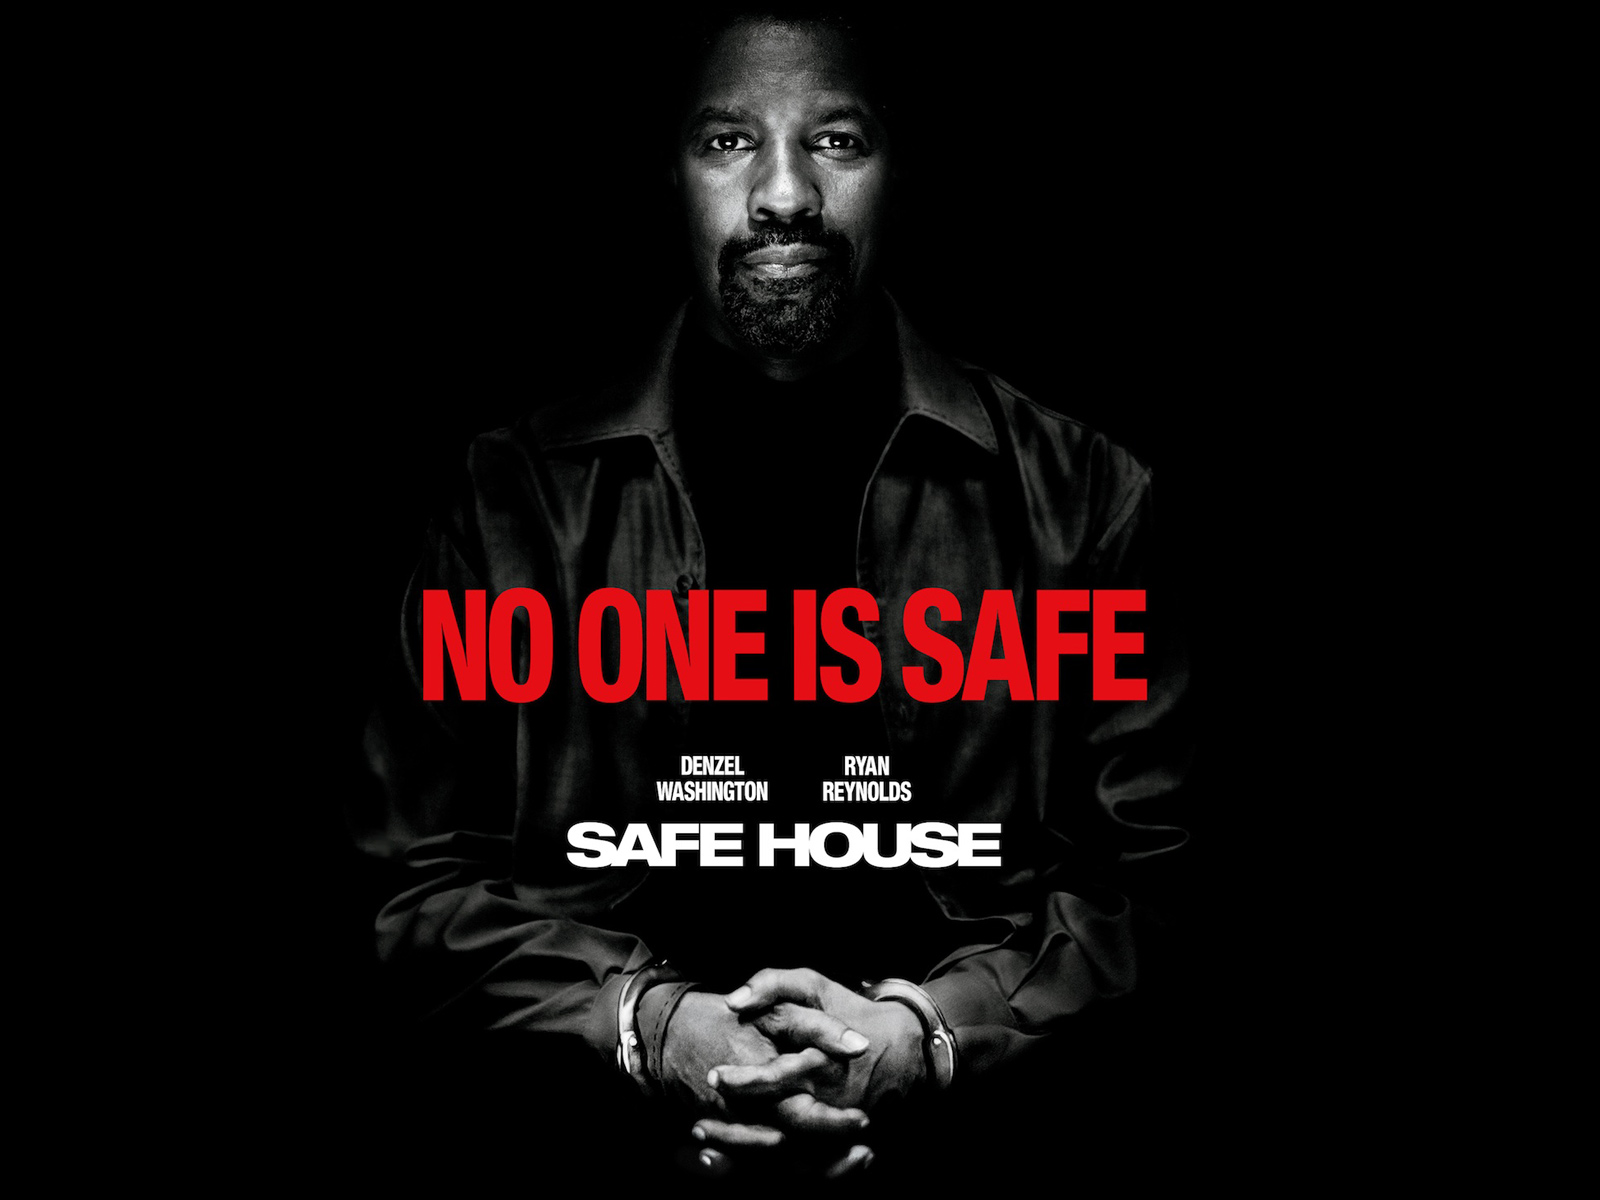 Wallpaper Of Safe House Movie Puter Desktop Image